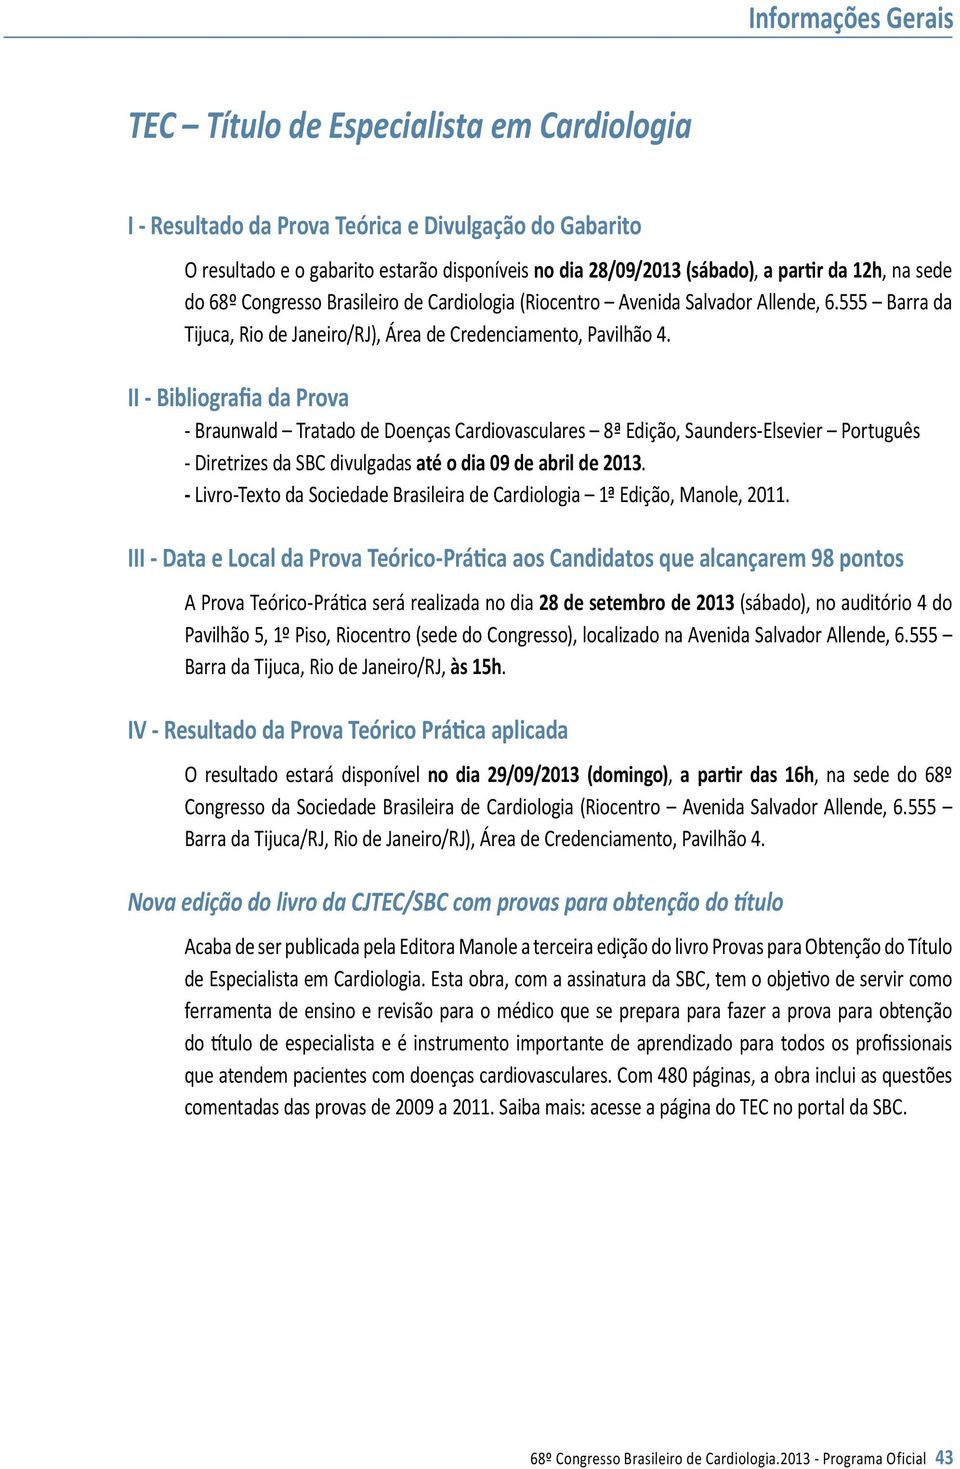 II - Bibliografia da Prova - Braunwald Tratado de Doenças Cardiovasculares 8ª Edição, Saunders-Elsevier Português - Diretrizes da SBC divulgadas até o dia 09 de abril de 2013.